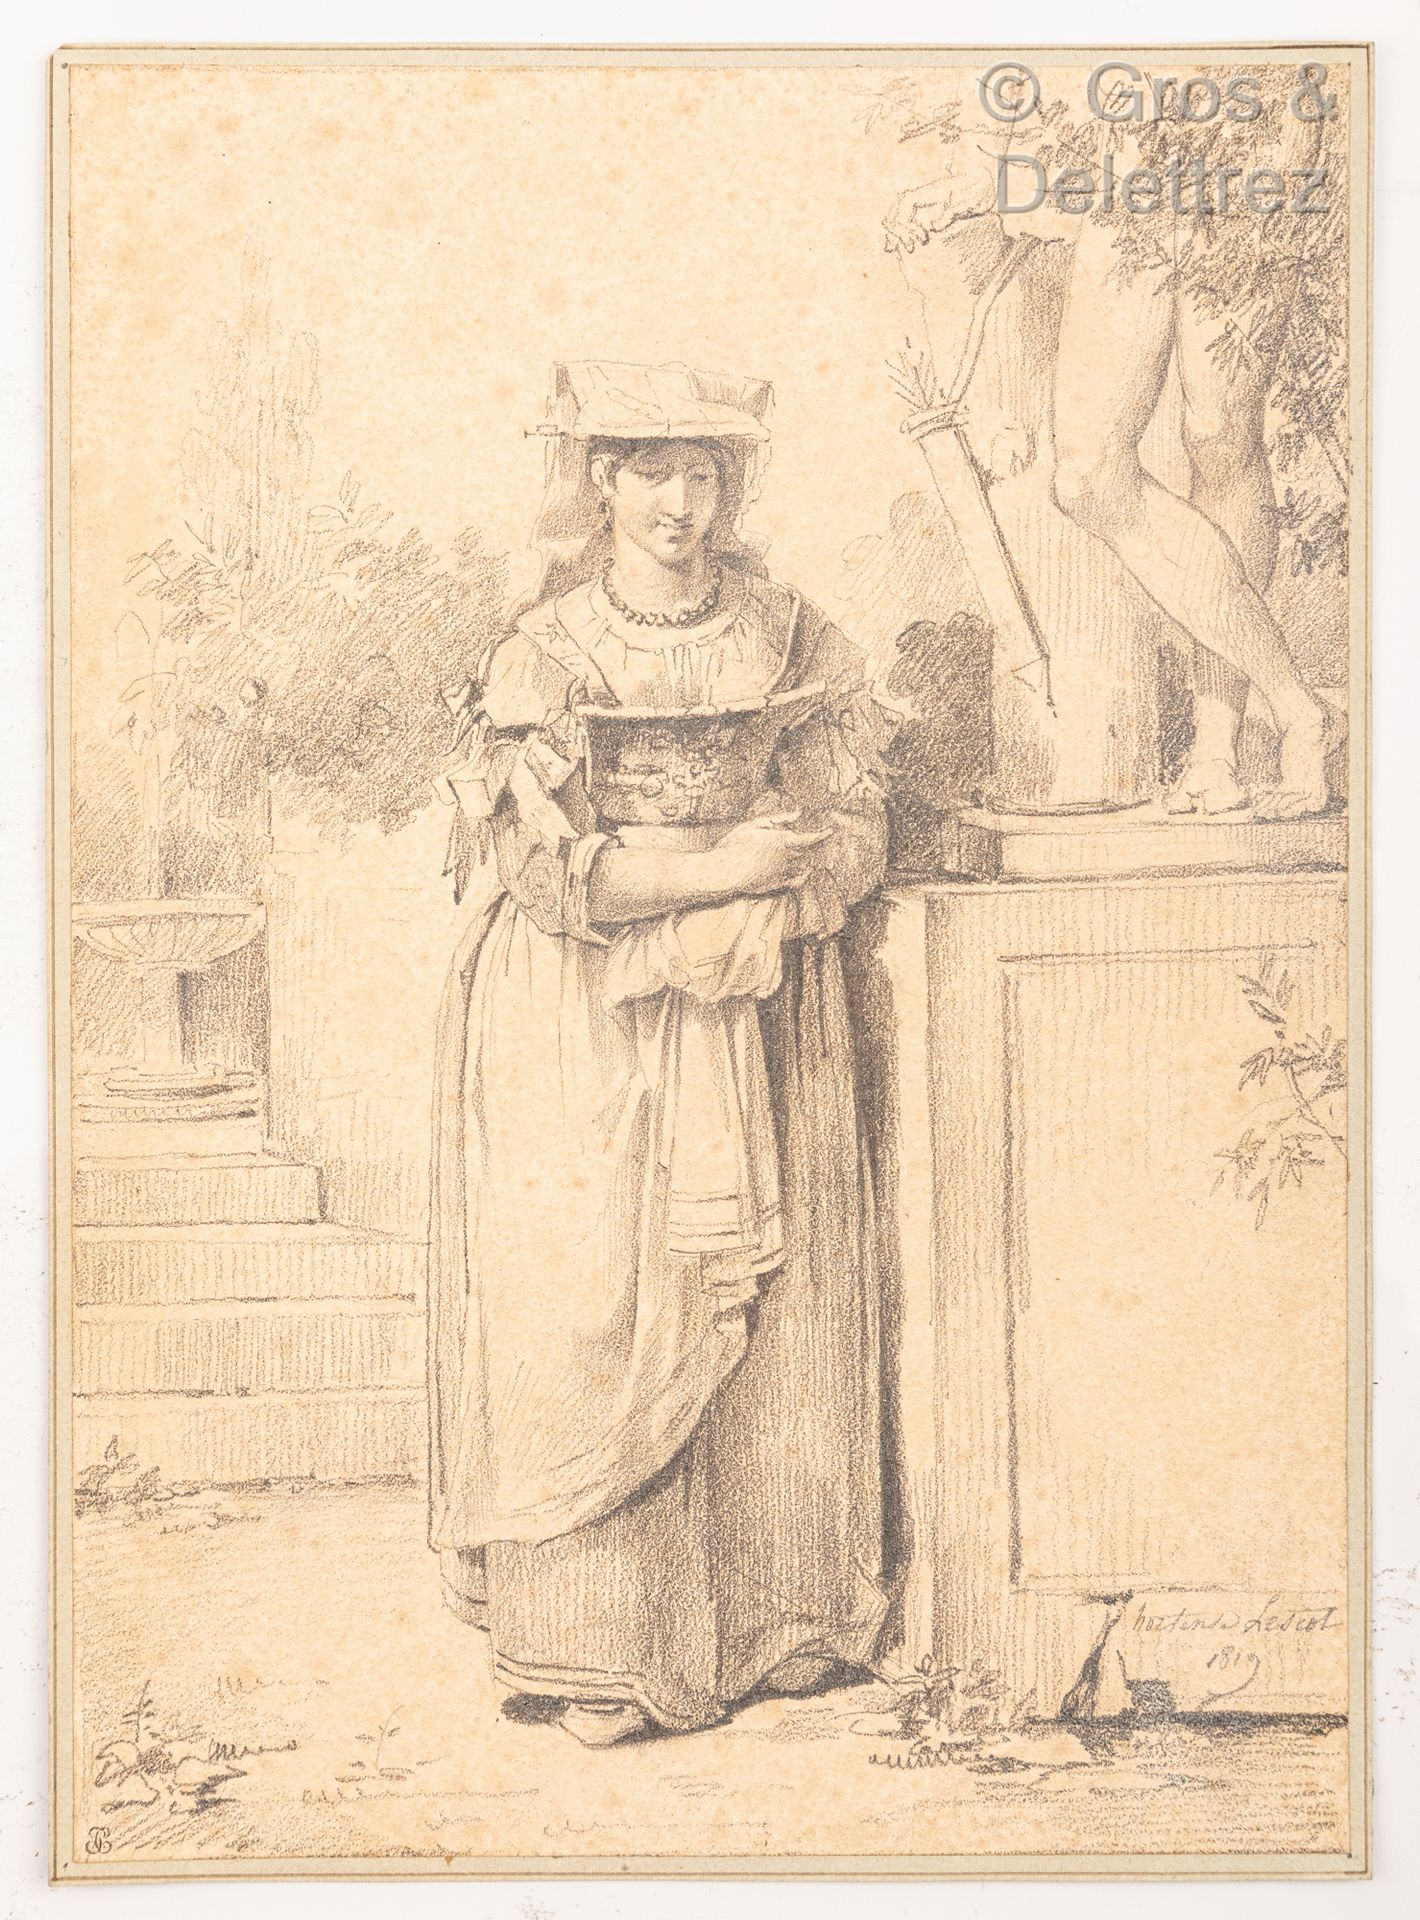 Null 霍坦斯-豪德布尔-莱斯科(Hortense Haudebourt-Lescot) (1785-1845)

一个身着传统服装的罗马妇女在一个古老的地位&hellip;